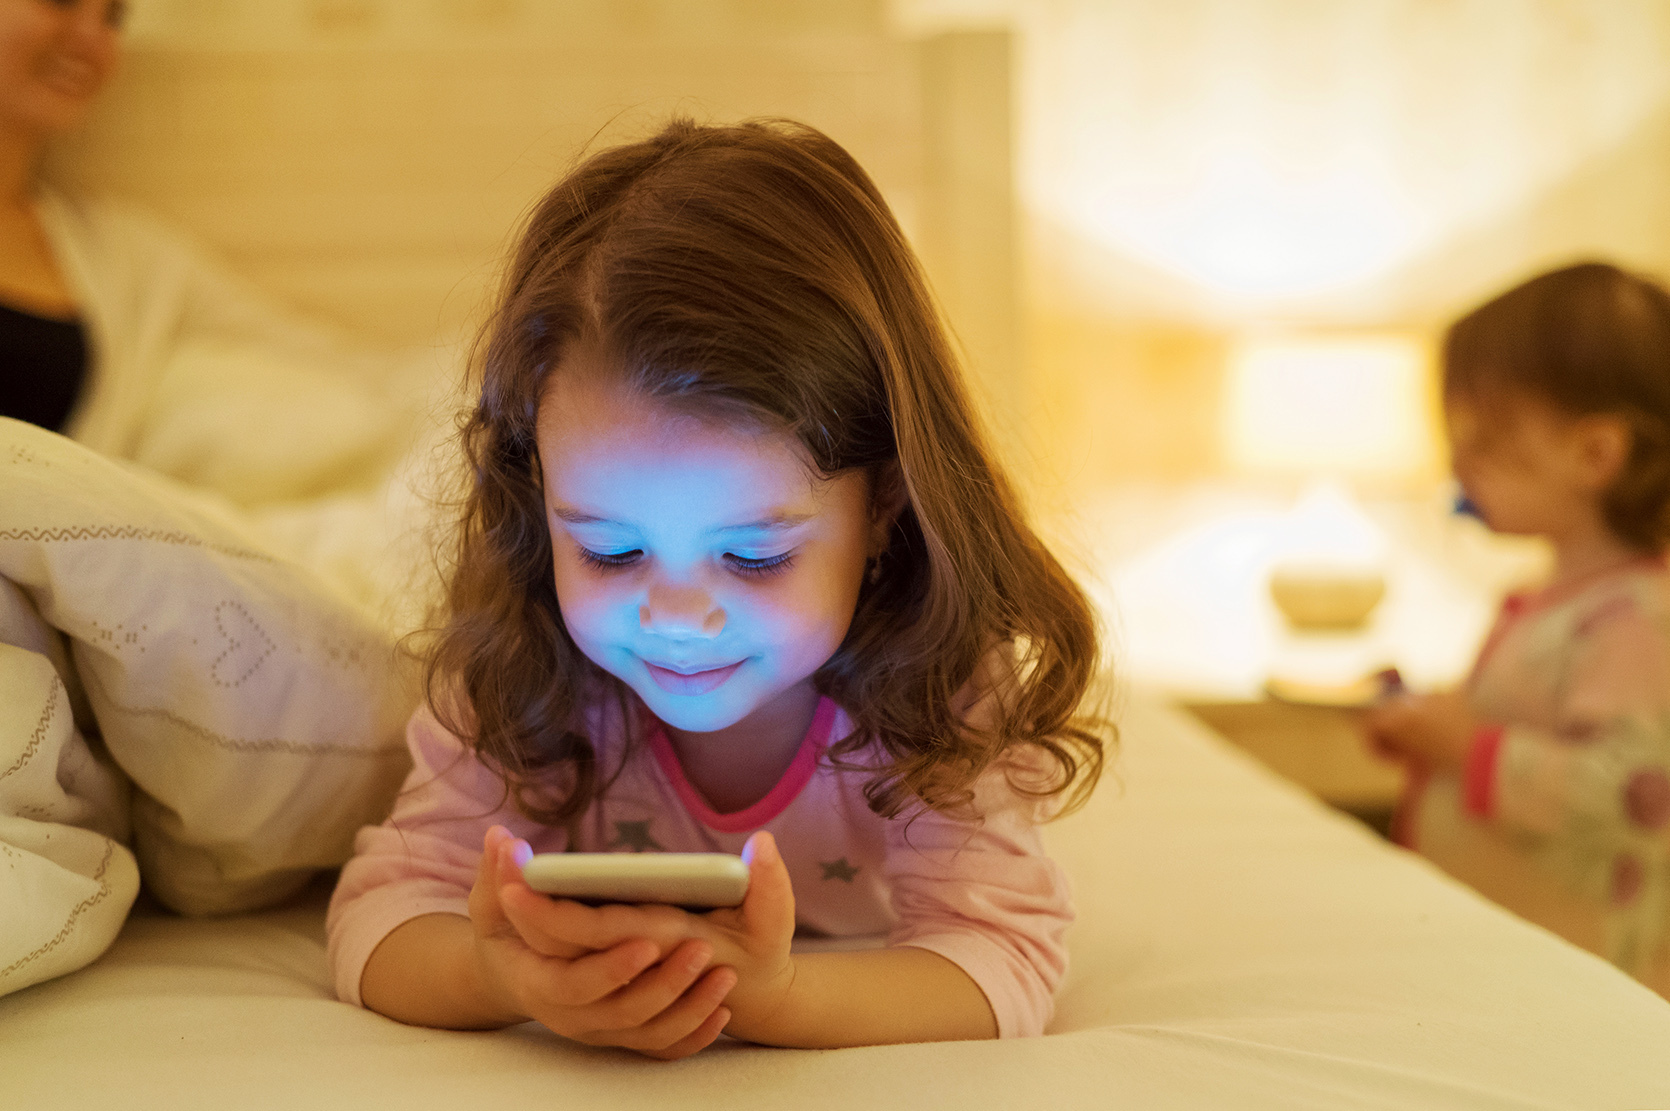 Jaki smartfon dla dziecka? Podpowiadamy jaki telefon warto kupić dziecku